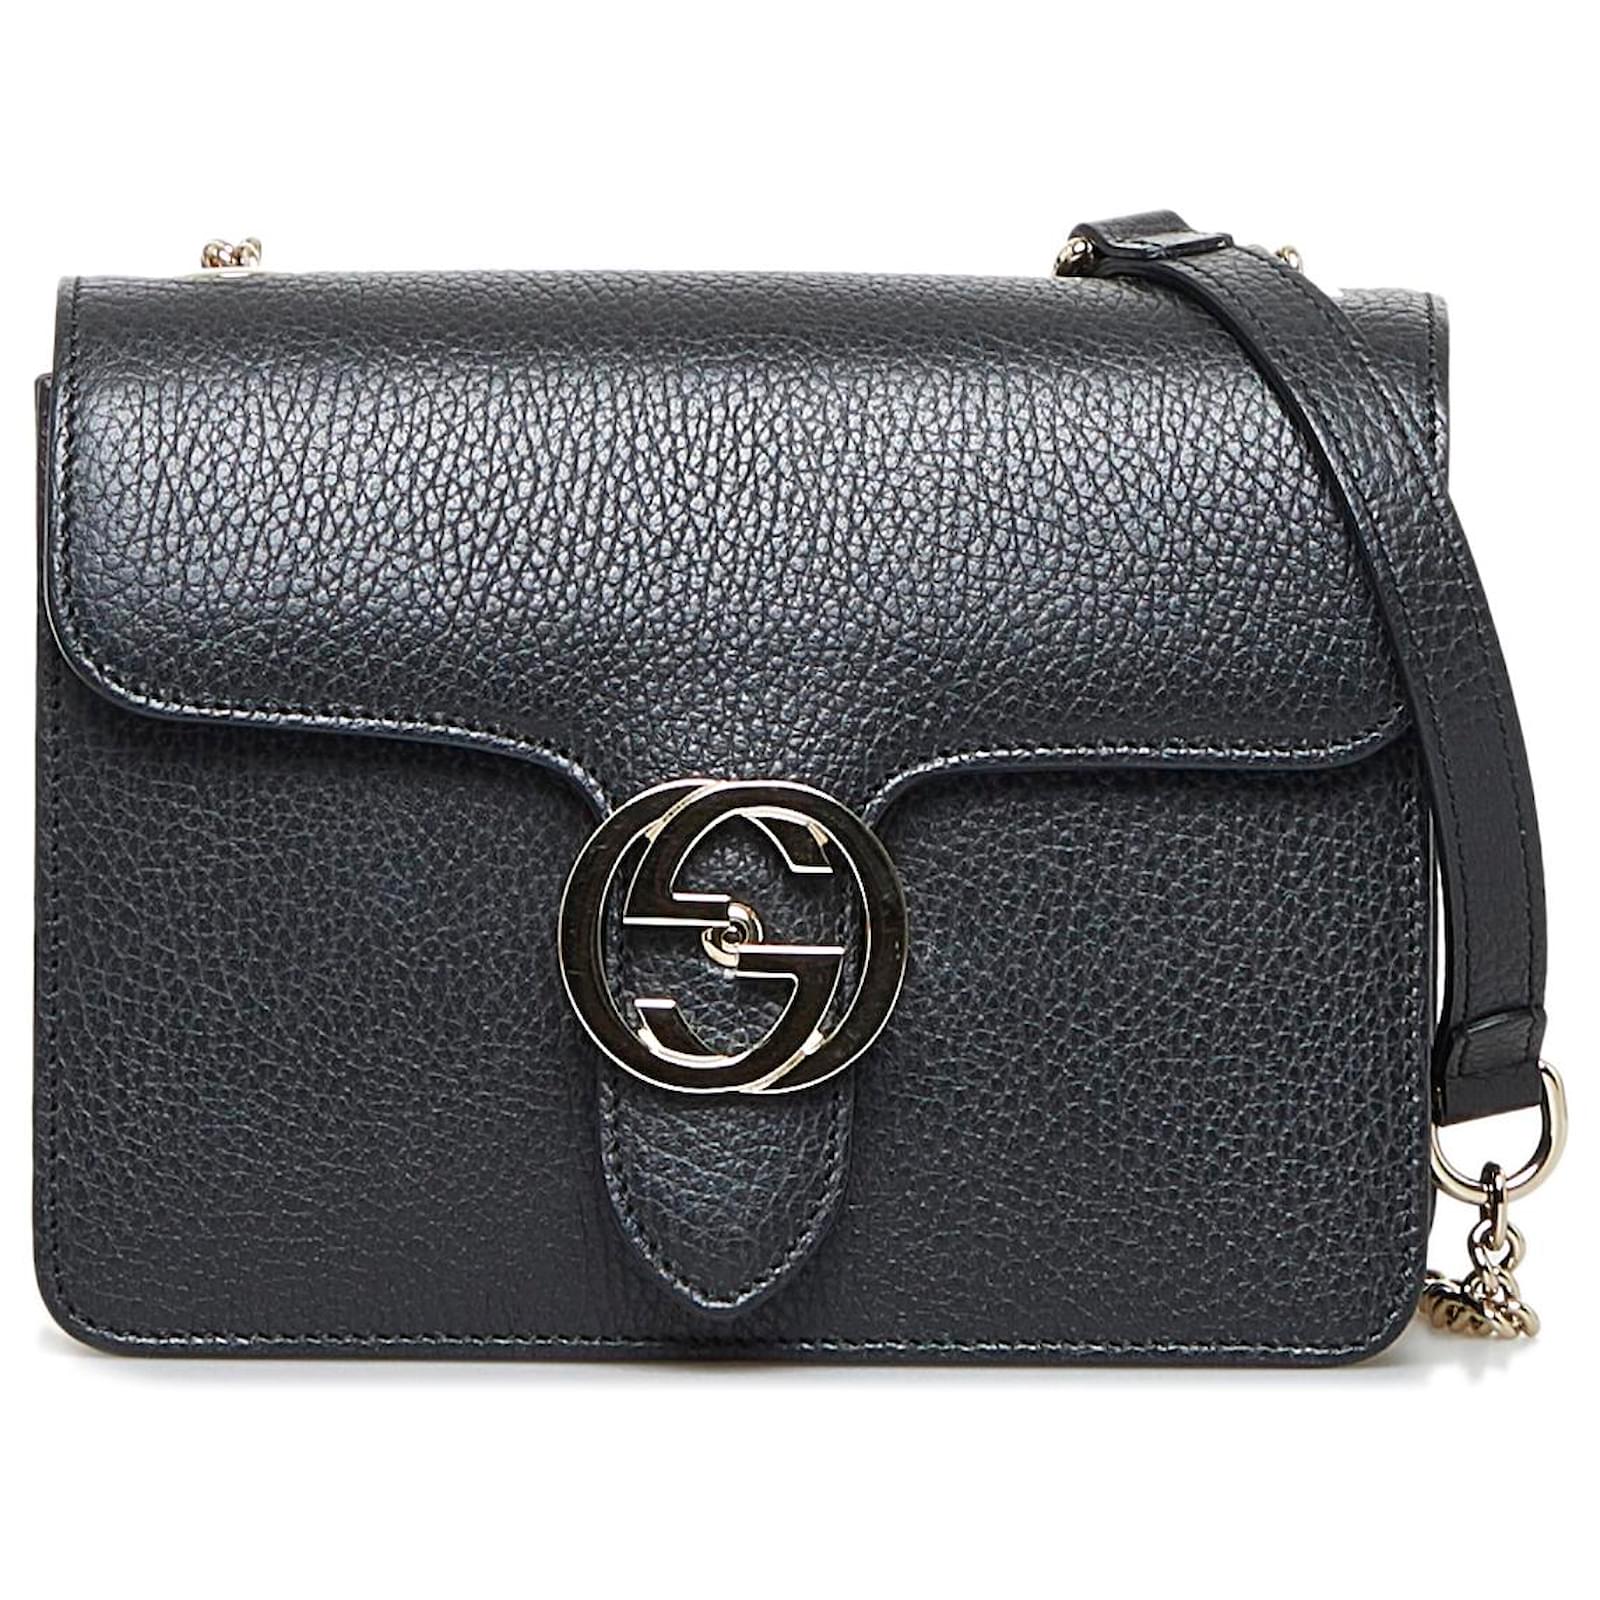 Gucci Black Leather Dollar Interlocking G Shoulder Bag Gucci